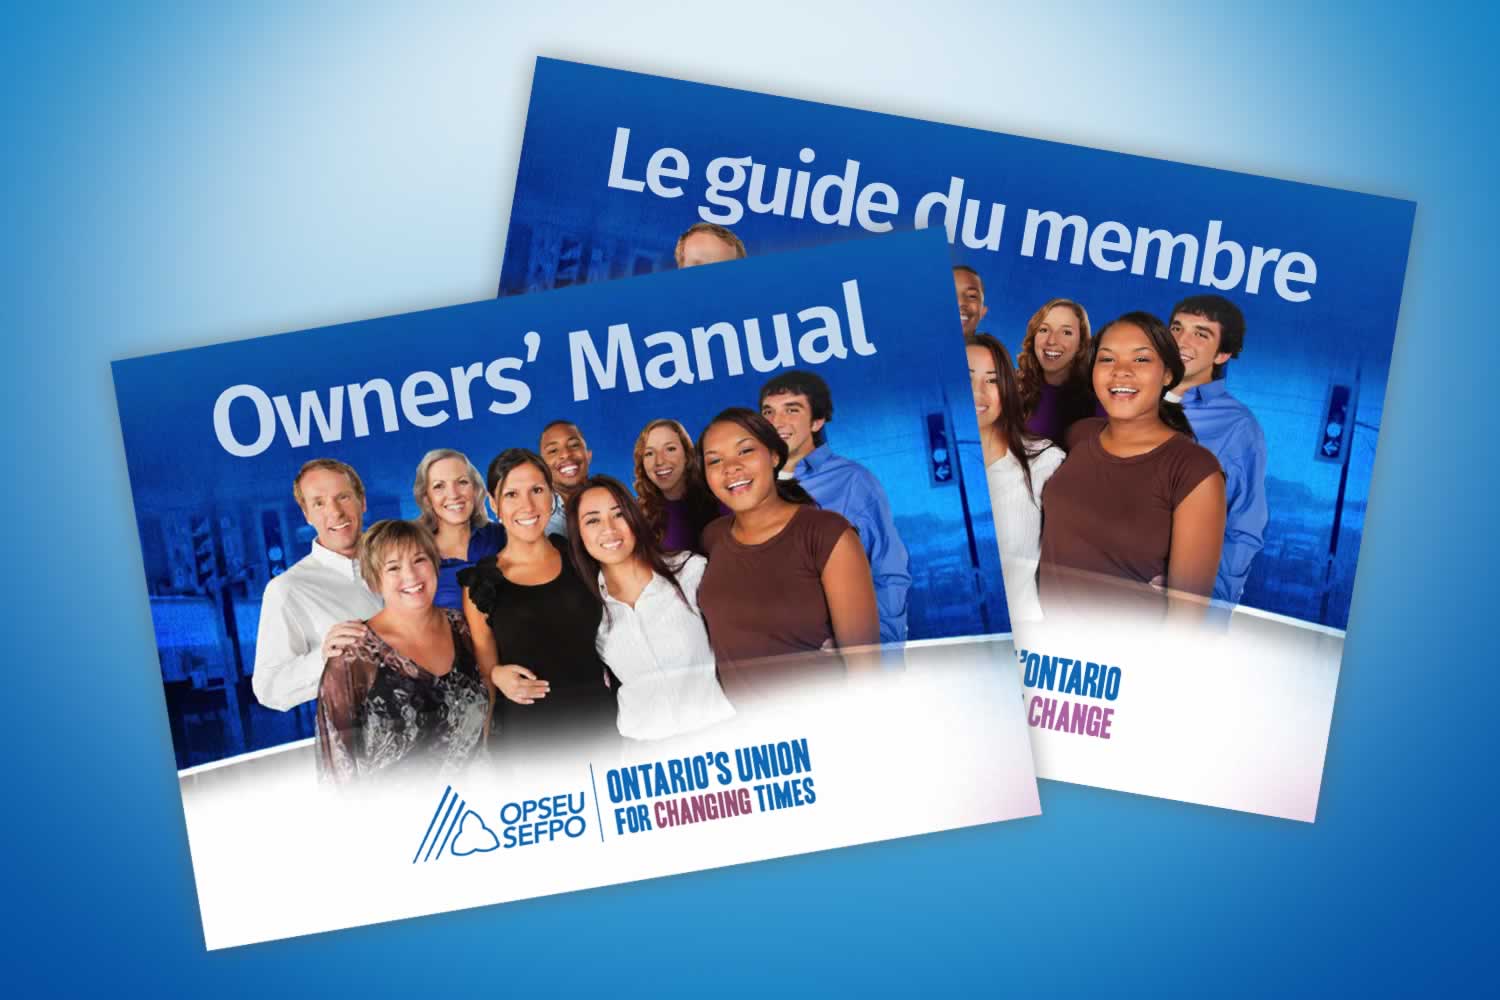 OPSEU Owner's Manual / SEFPO Le guide du membre